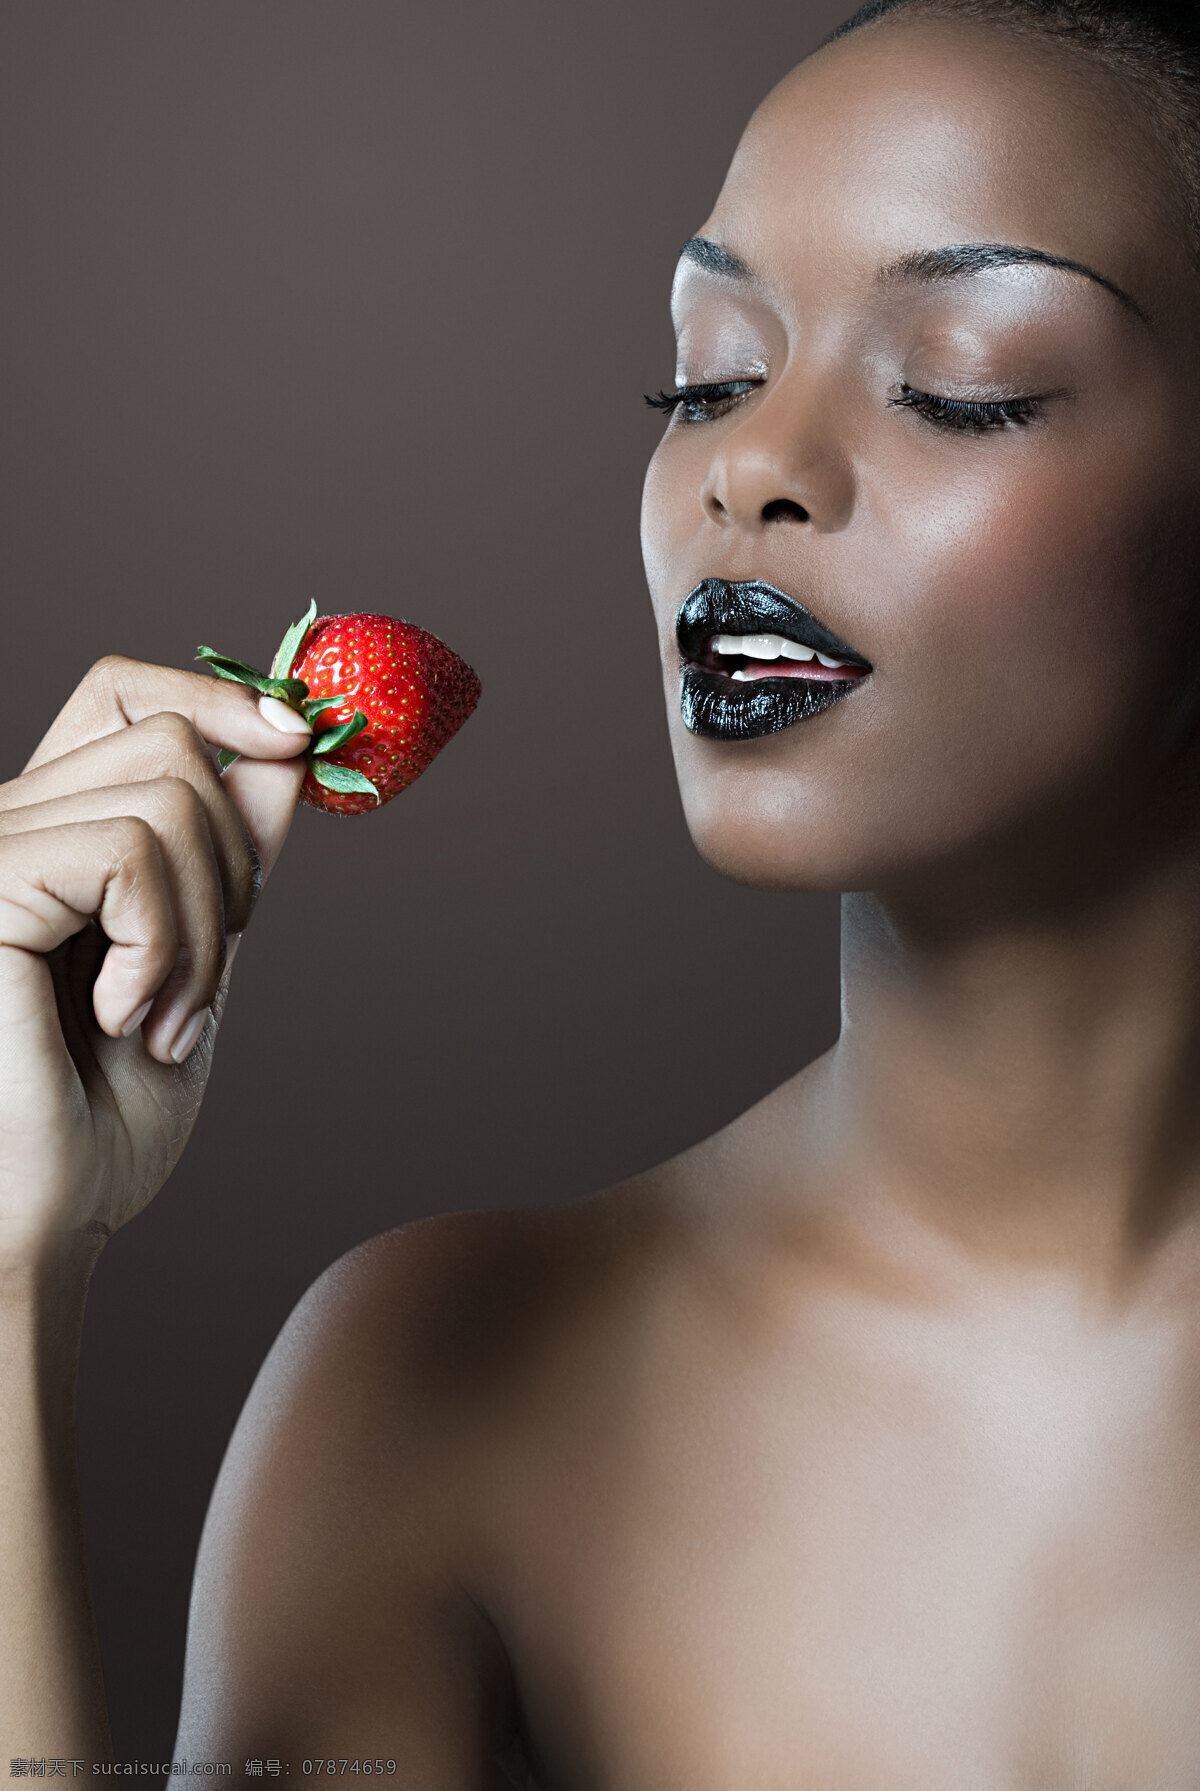 美女 品尝 鲜嫩 草莓 女人 女性 红色 欧美 性感 创意 护肤 糖果 新鲜 黑色 嘴唇 裸体 甜美 海报 高清图片 美女图片 人物图片